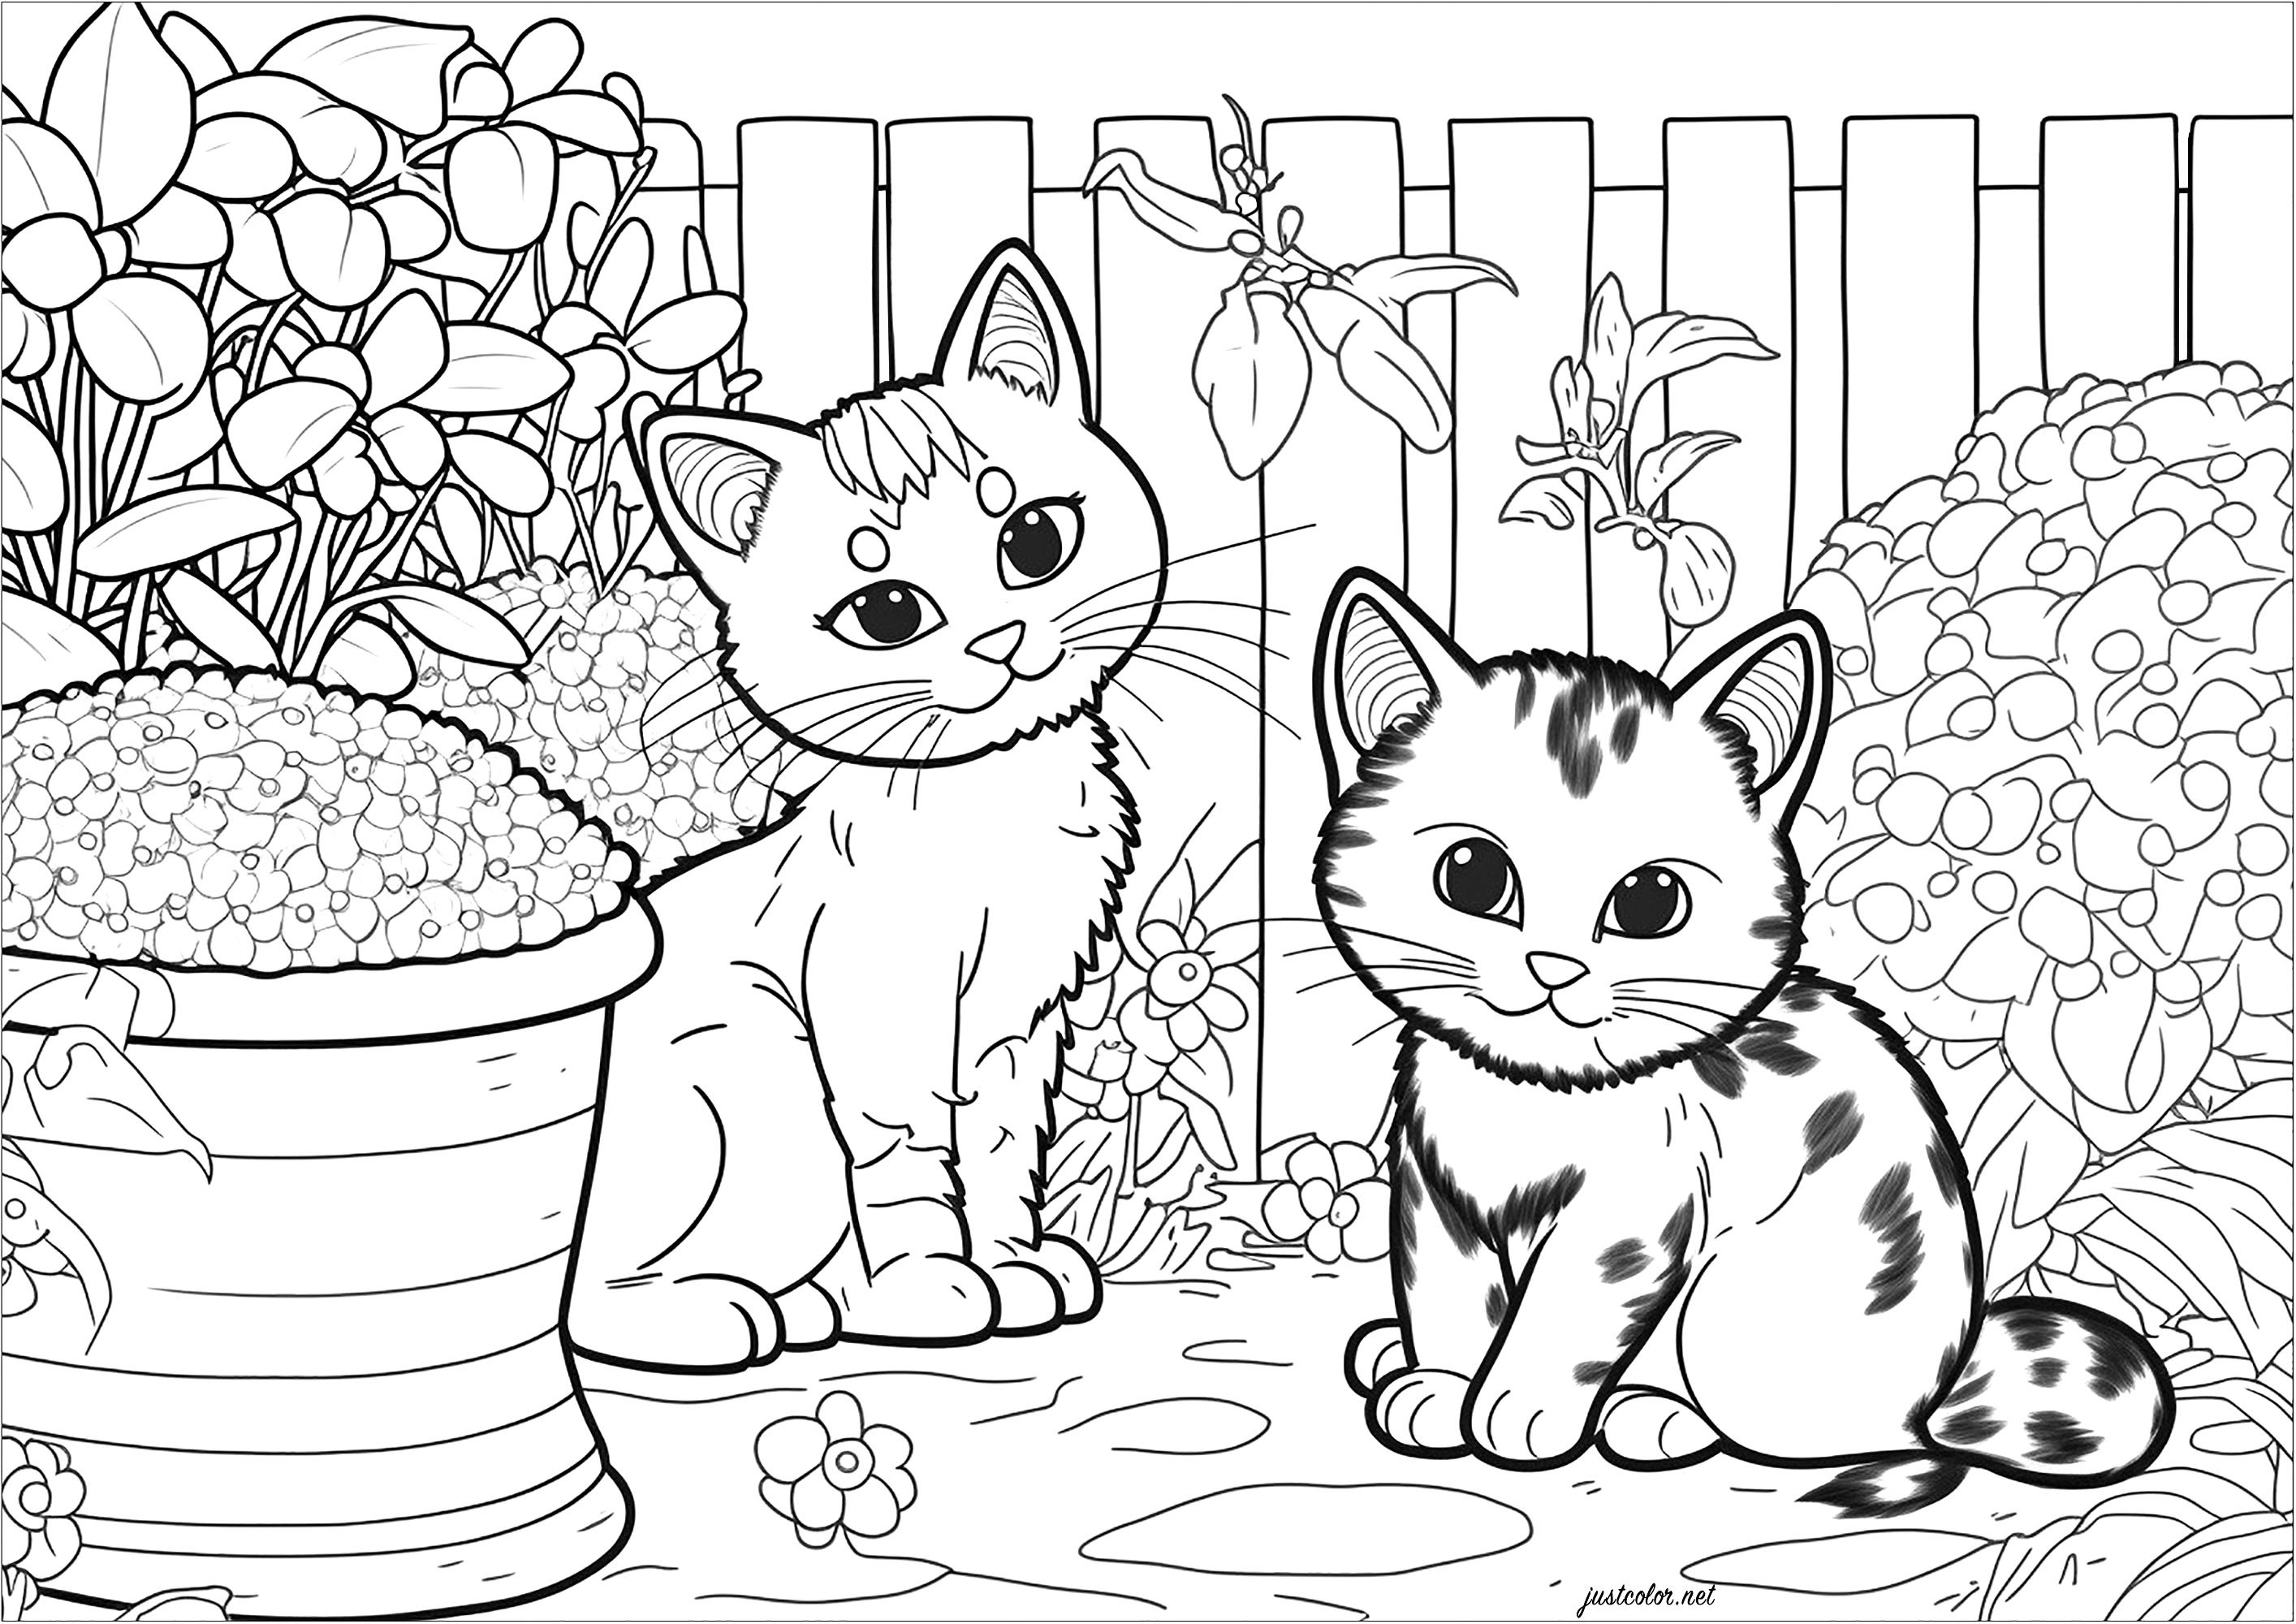 Due piccoli gatti in giardino da colorare. Questa pagina da colorare è carina e rilassante. Raffigura due piccoli gatti che giocano in un giardino. I gatti sono circondati da una varietà di elementi vegetali, come fiori, cespugli, alberi ed erbe. È un ottimo modo per evadere in un mondo di colori e natura.